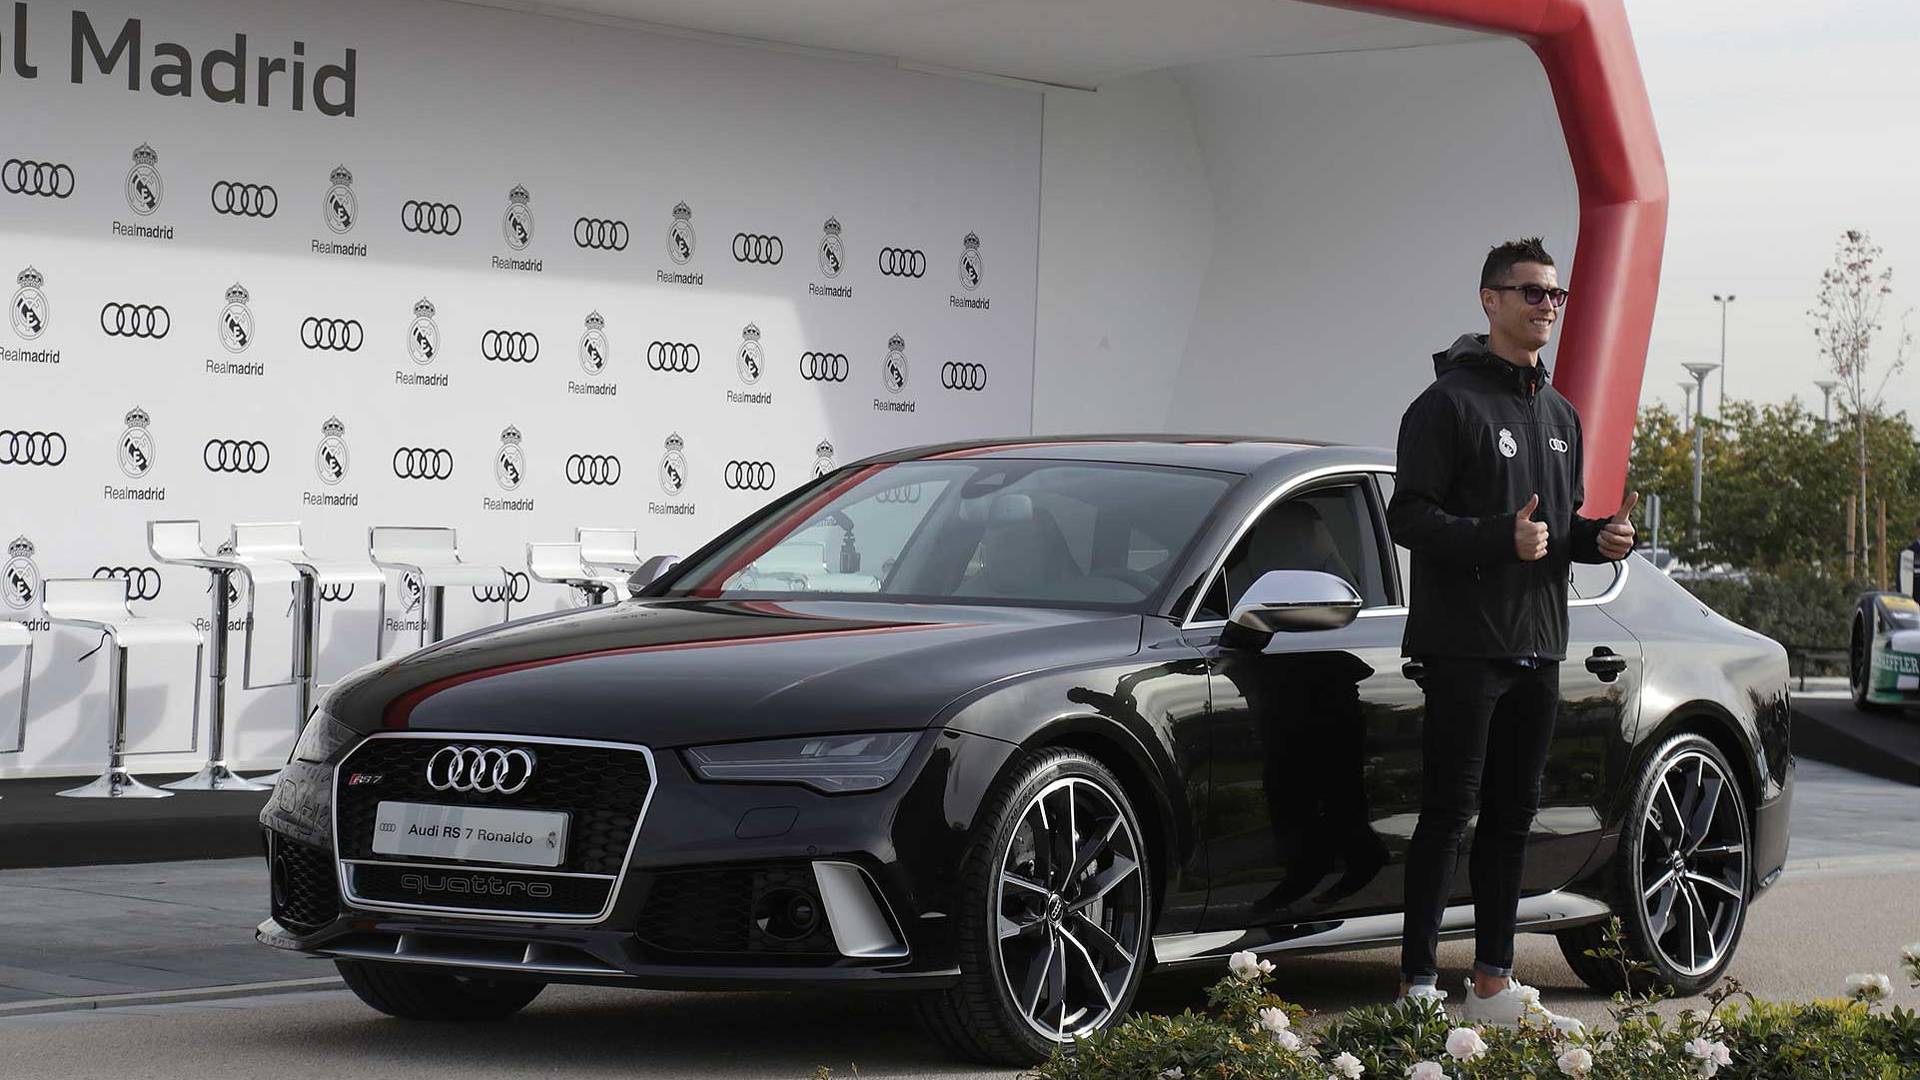 Футболистите на Real Madrid получиха новите си автомобили Audi